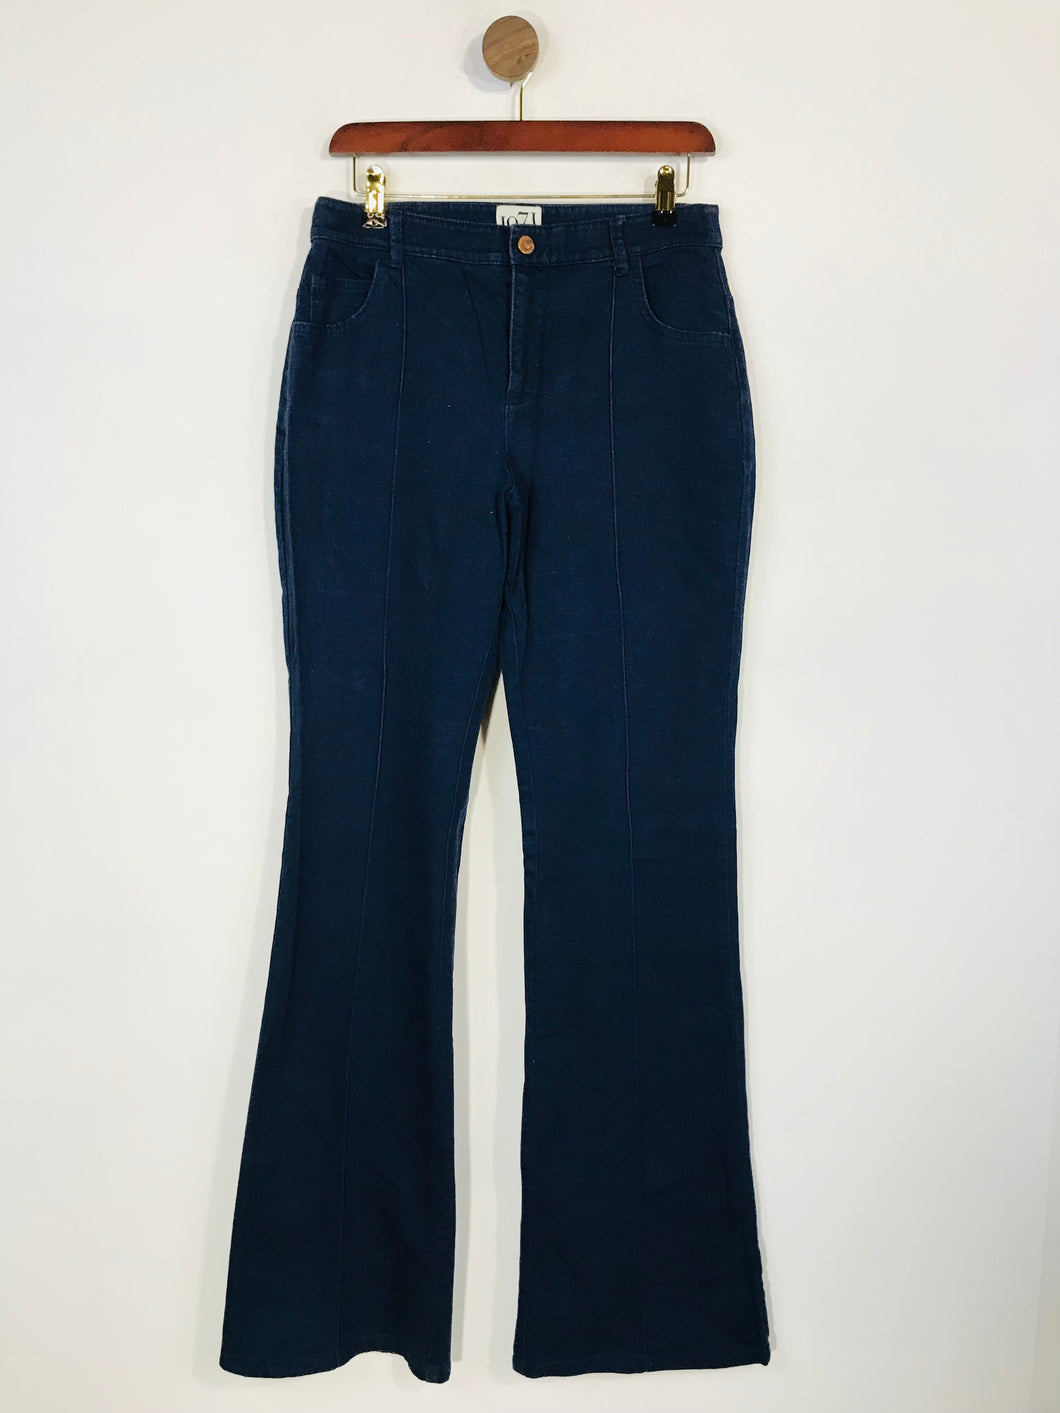 Reiss Women's Flare Jeans | UK10 | Blue